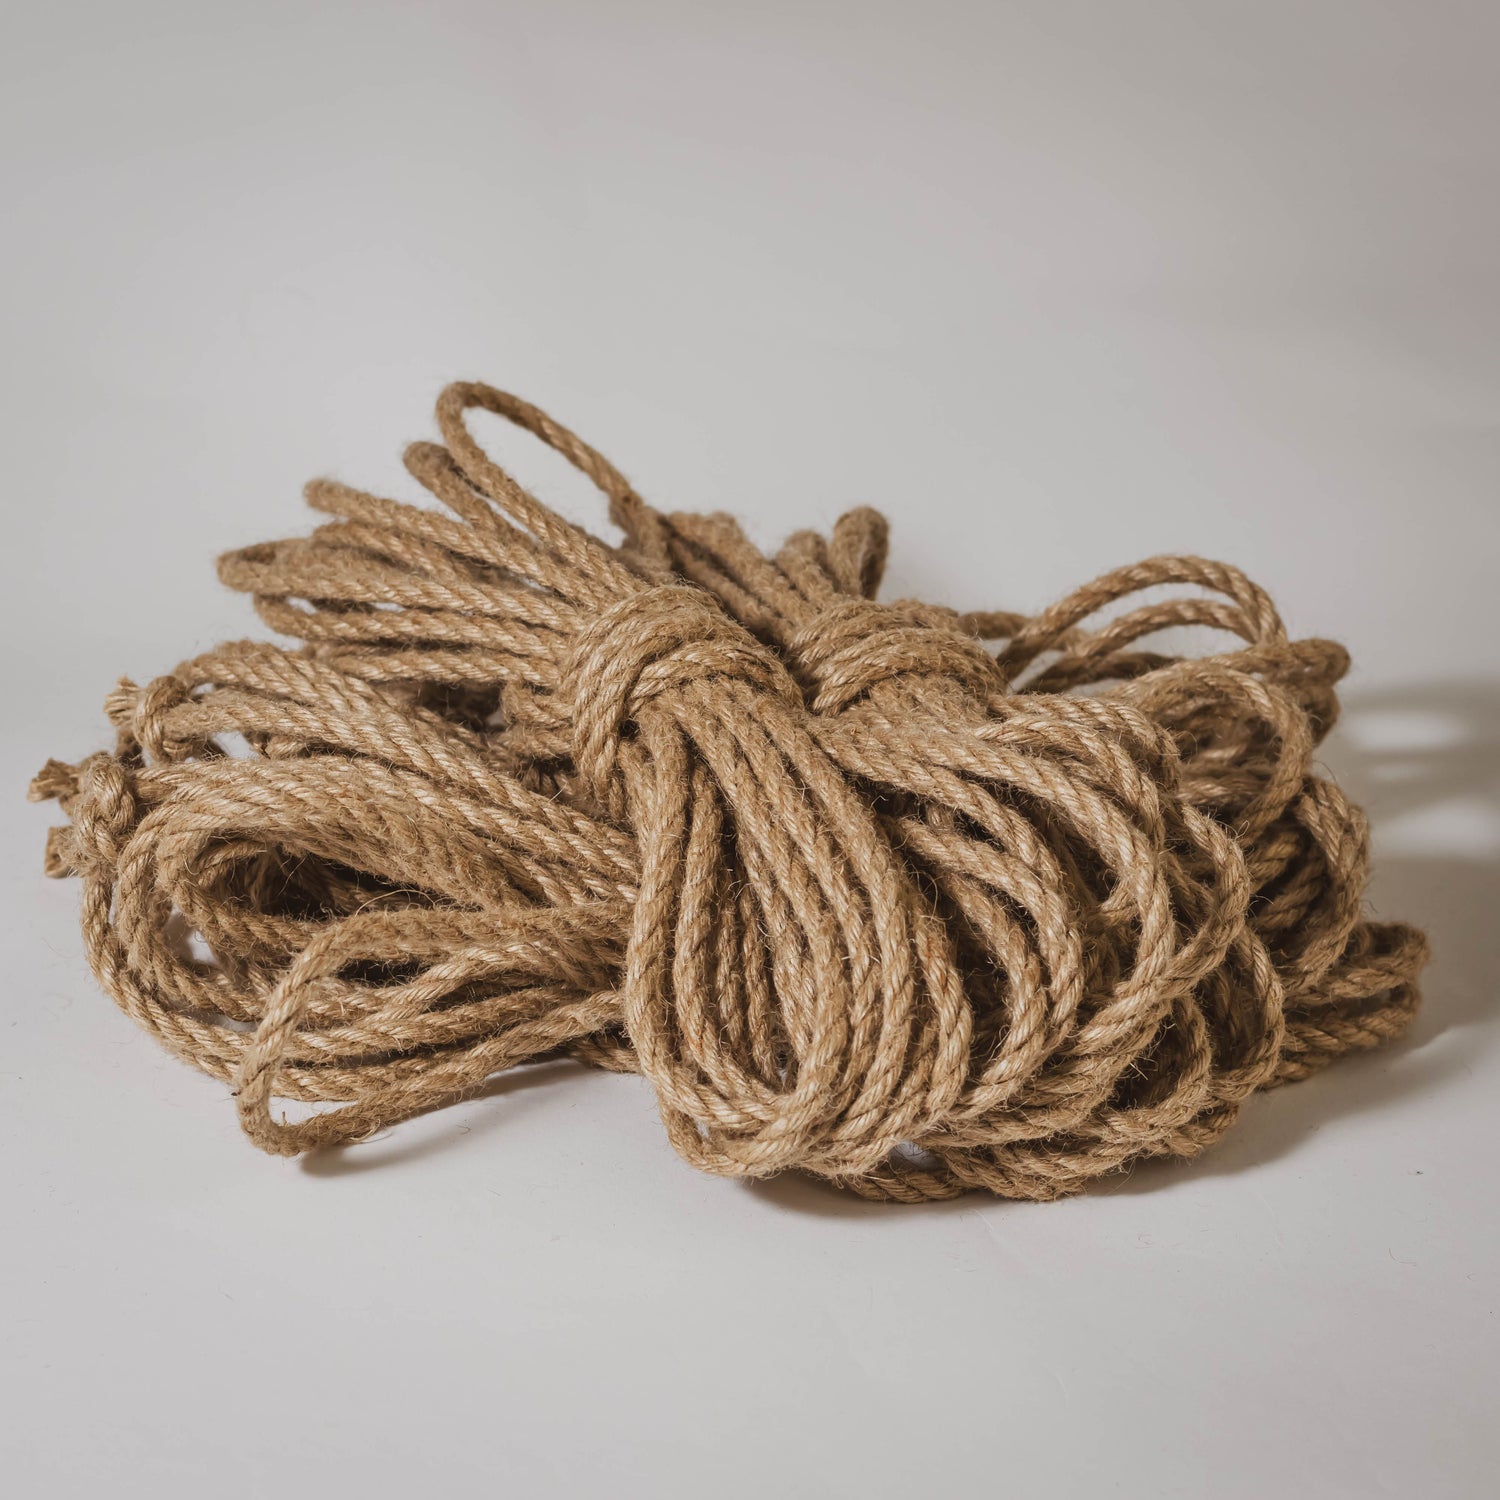 Untreated - 6mm Jute Rope Shibari Rope Bundle of 4 